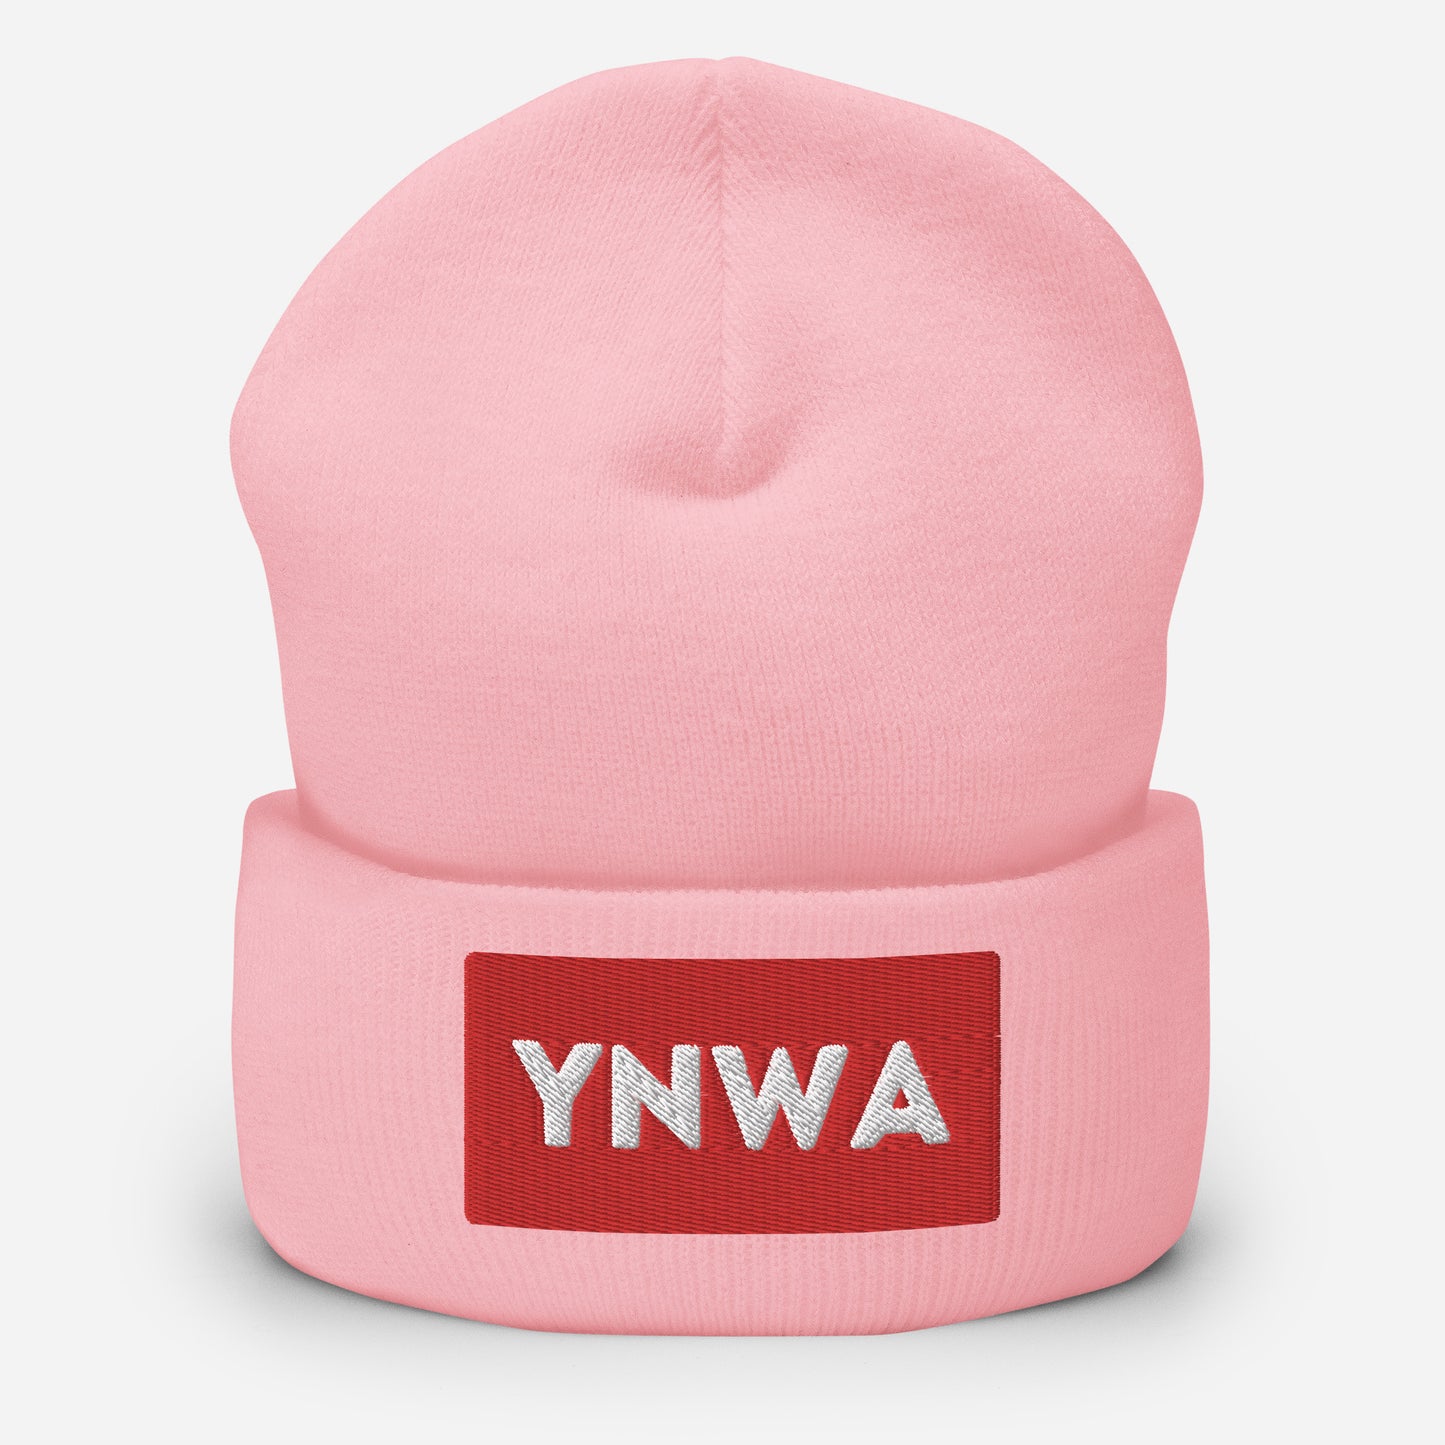 YNWA Cuffed Beanie Hat